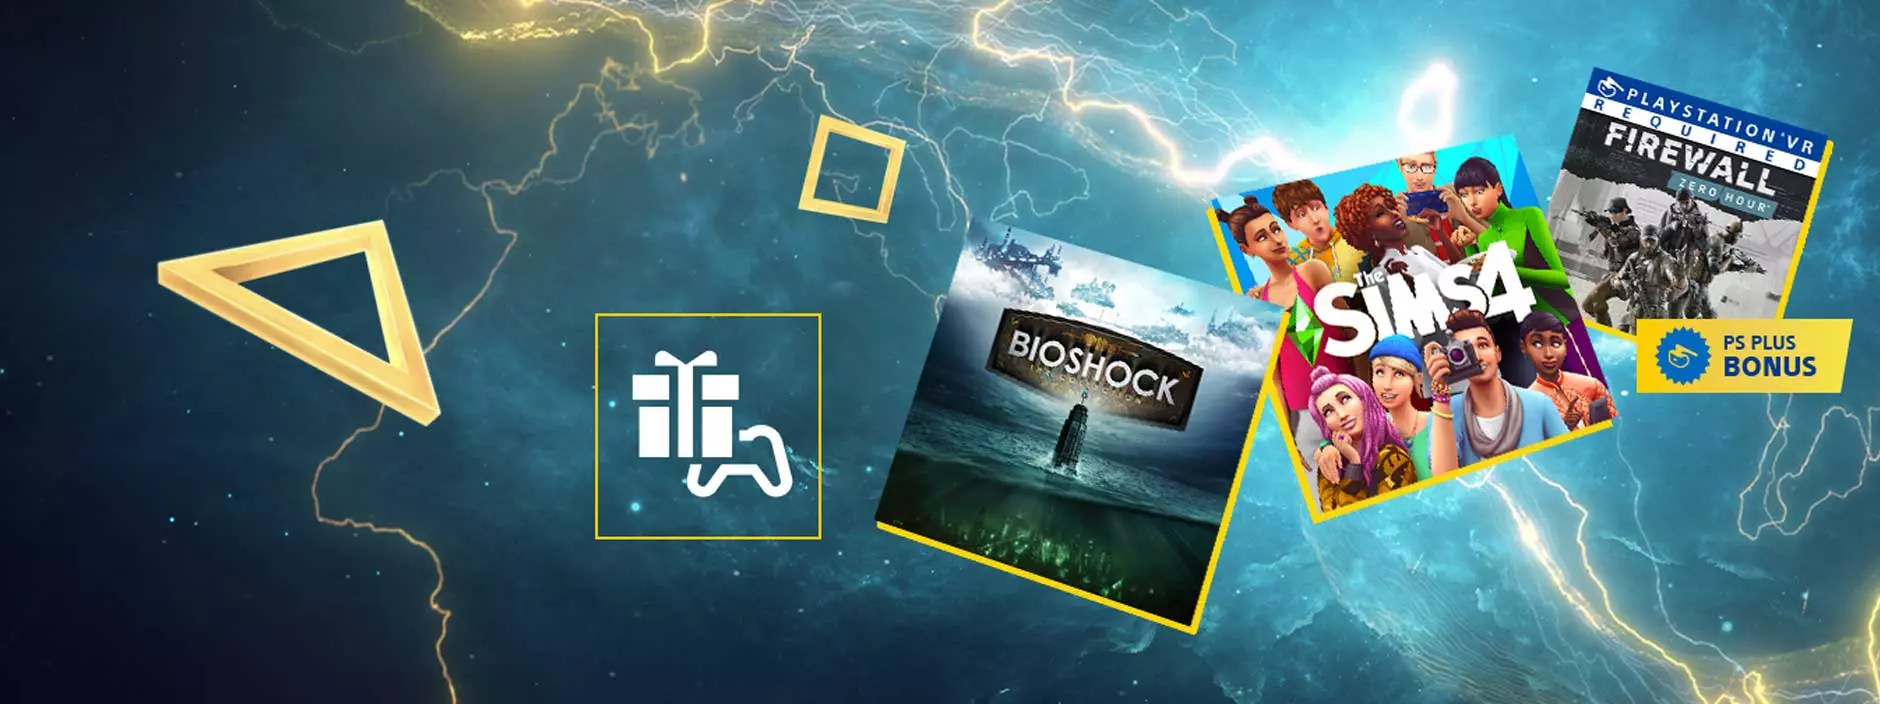 PS Plus щедро подарит подписчикам в феврале:
Трилогия BioShok: The Collection - BioShok, BioShok 2 и BioShok Infinite доступна в качестве 1080p, уже обневленные игры с материалами и дополнениями для одиночной игры.